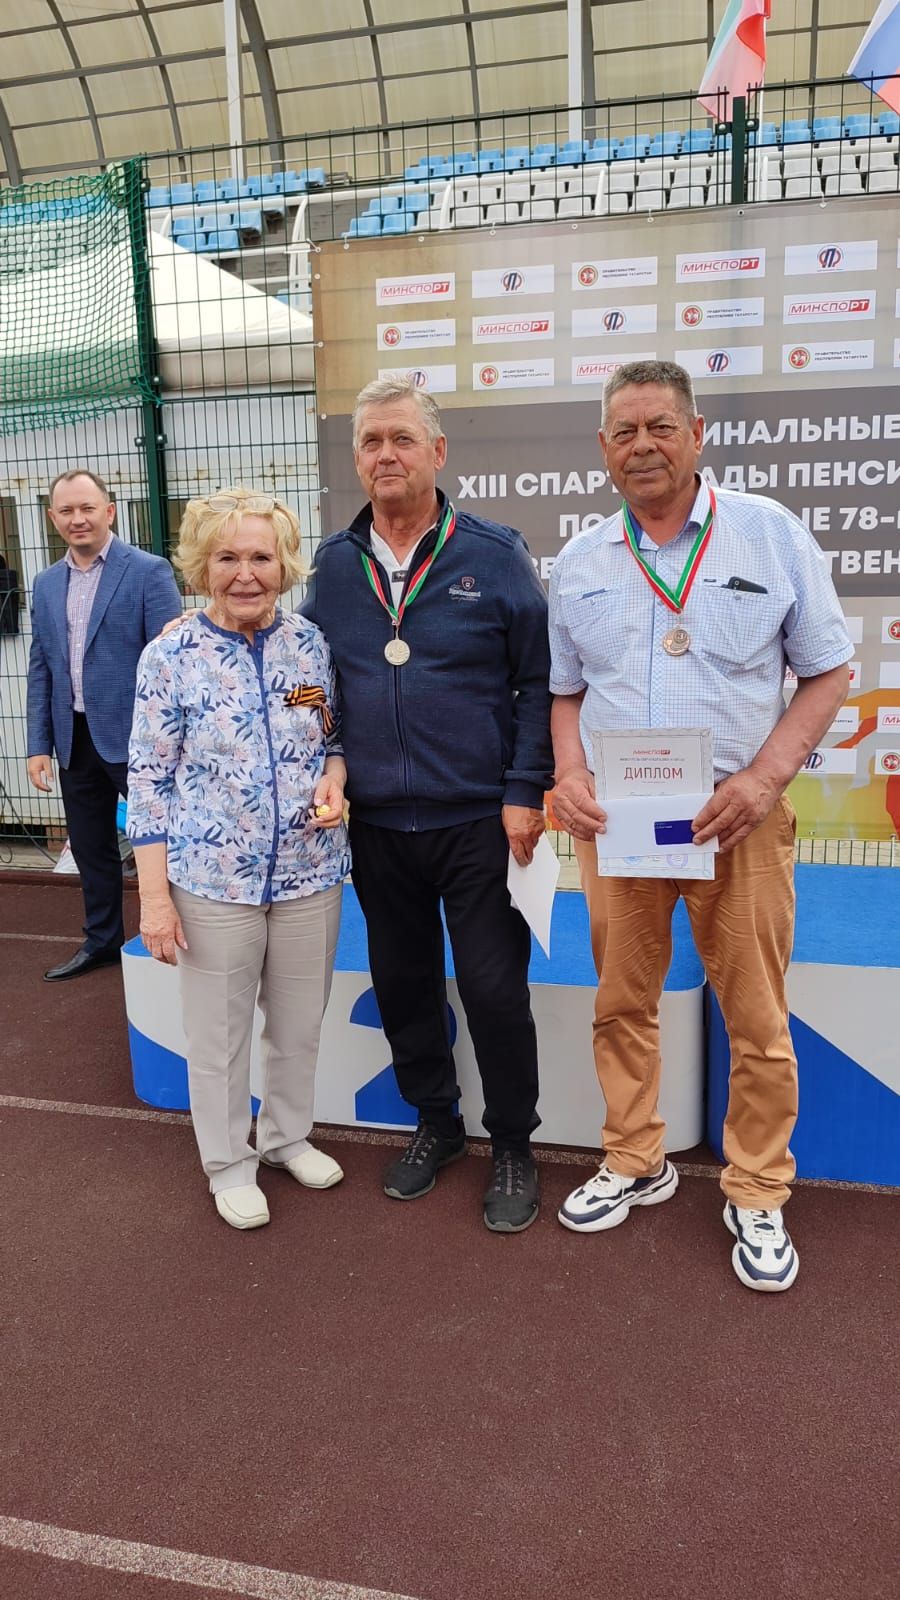 Команда Лениногорска заняла второе место в республиканских спортивных соревнованиях «Третий возраст»